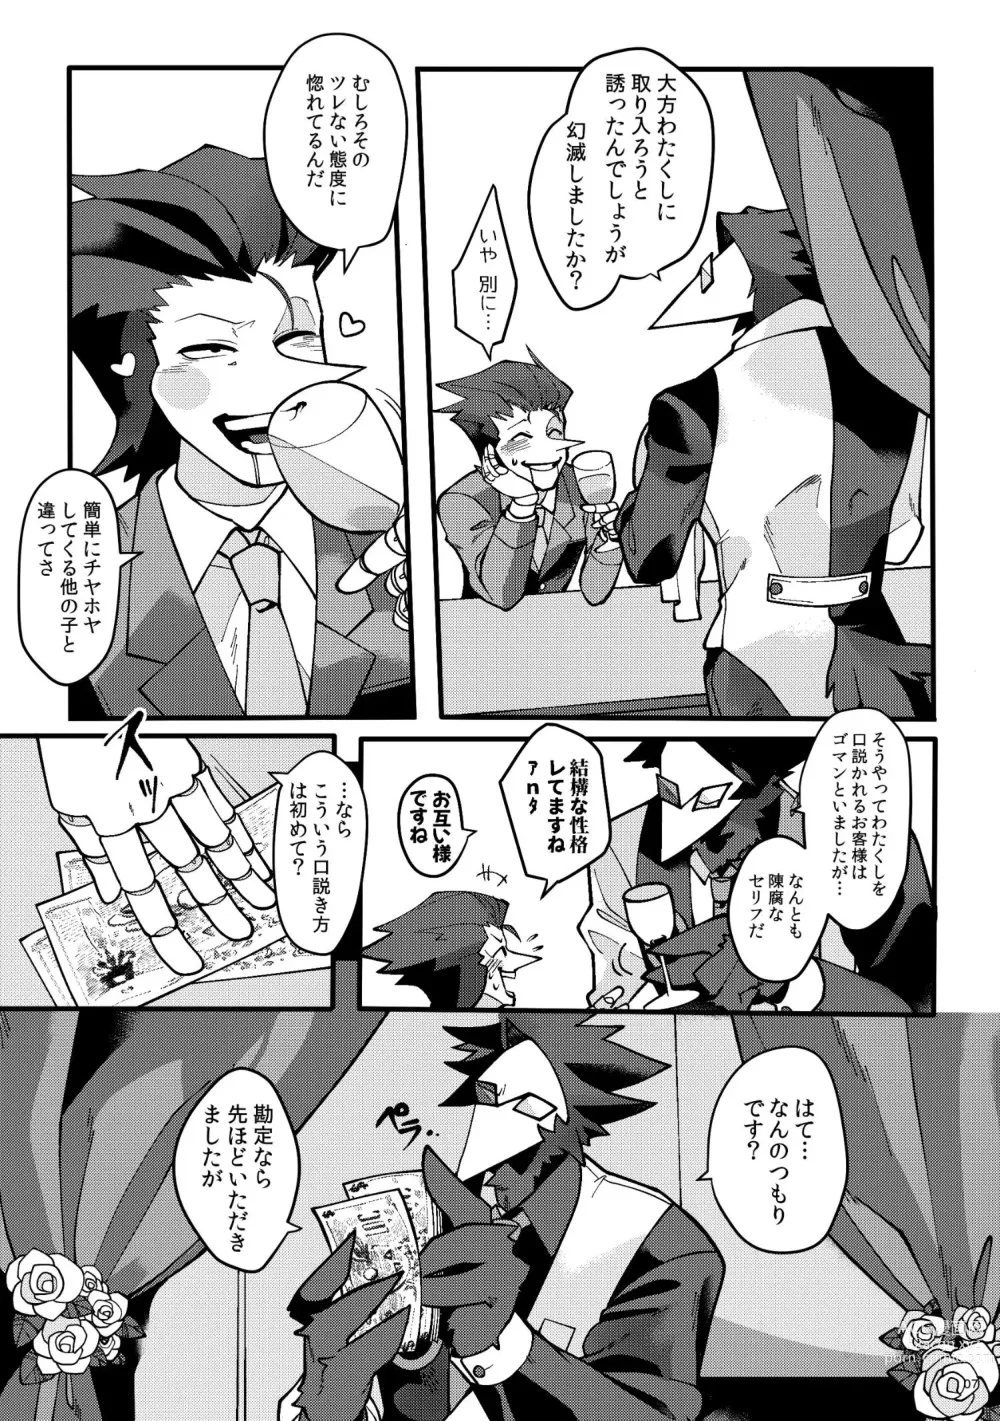 Page 8 of doujinshi Uchoutengai